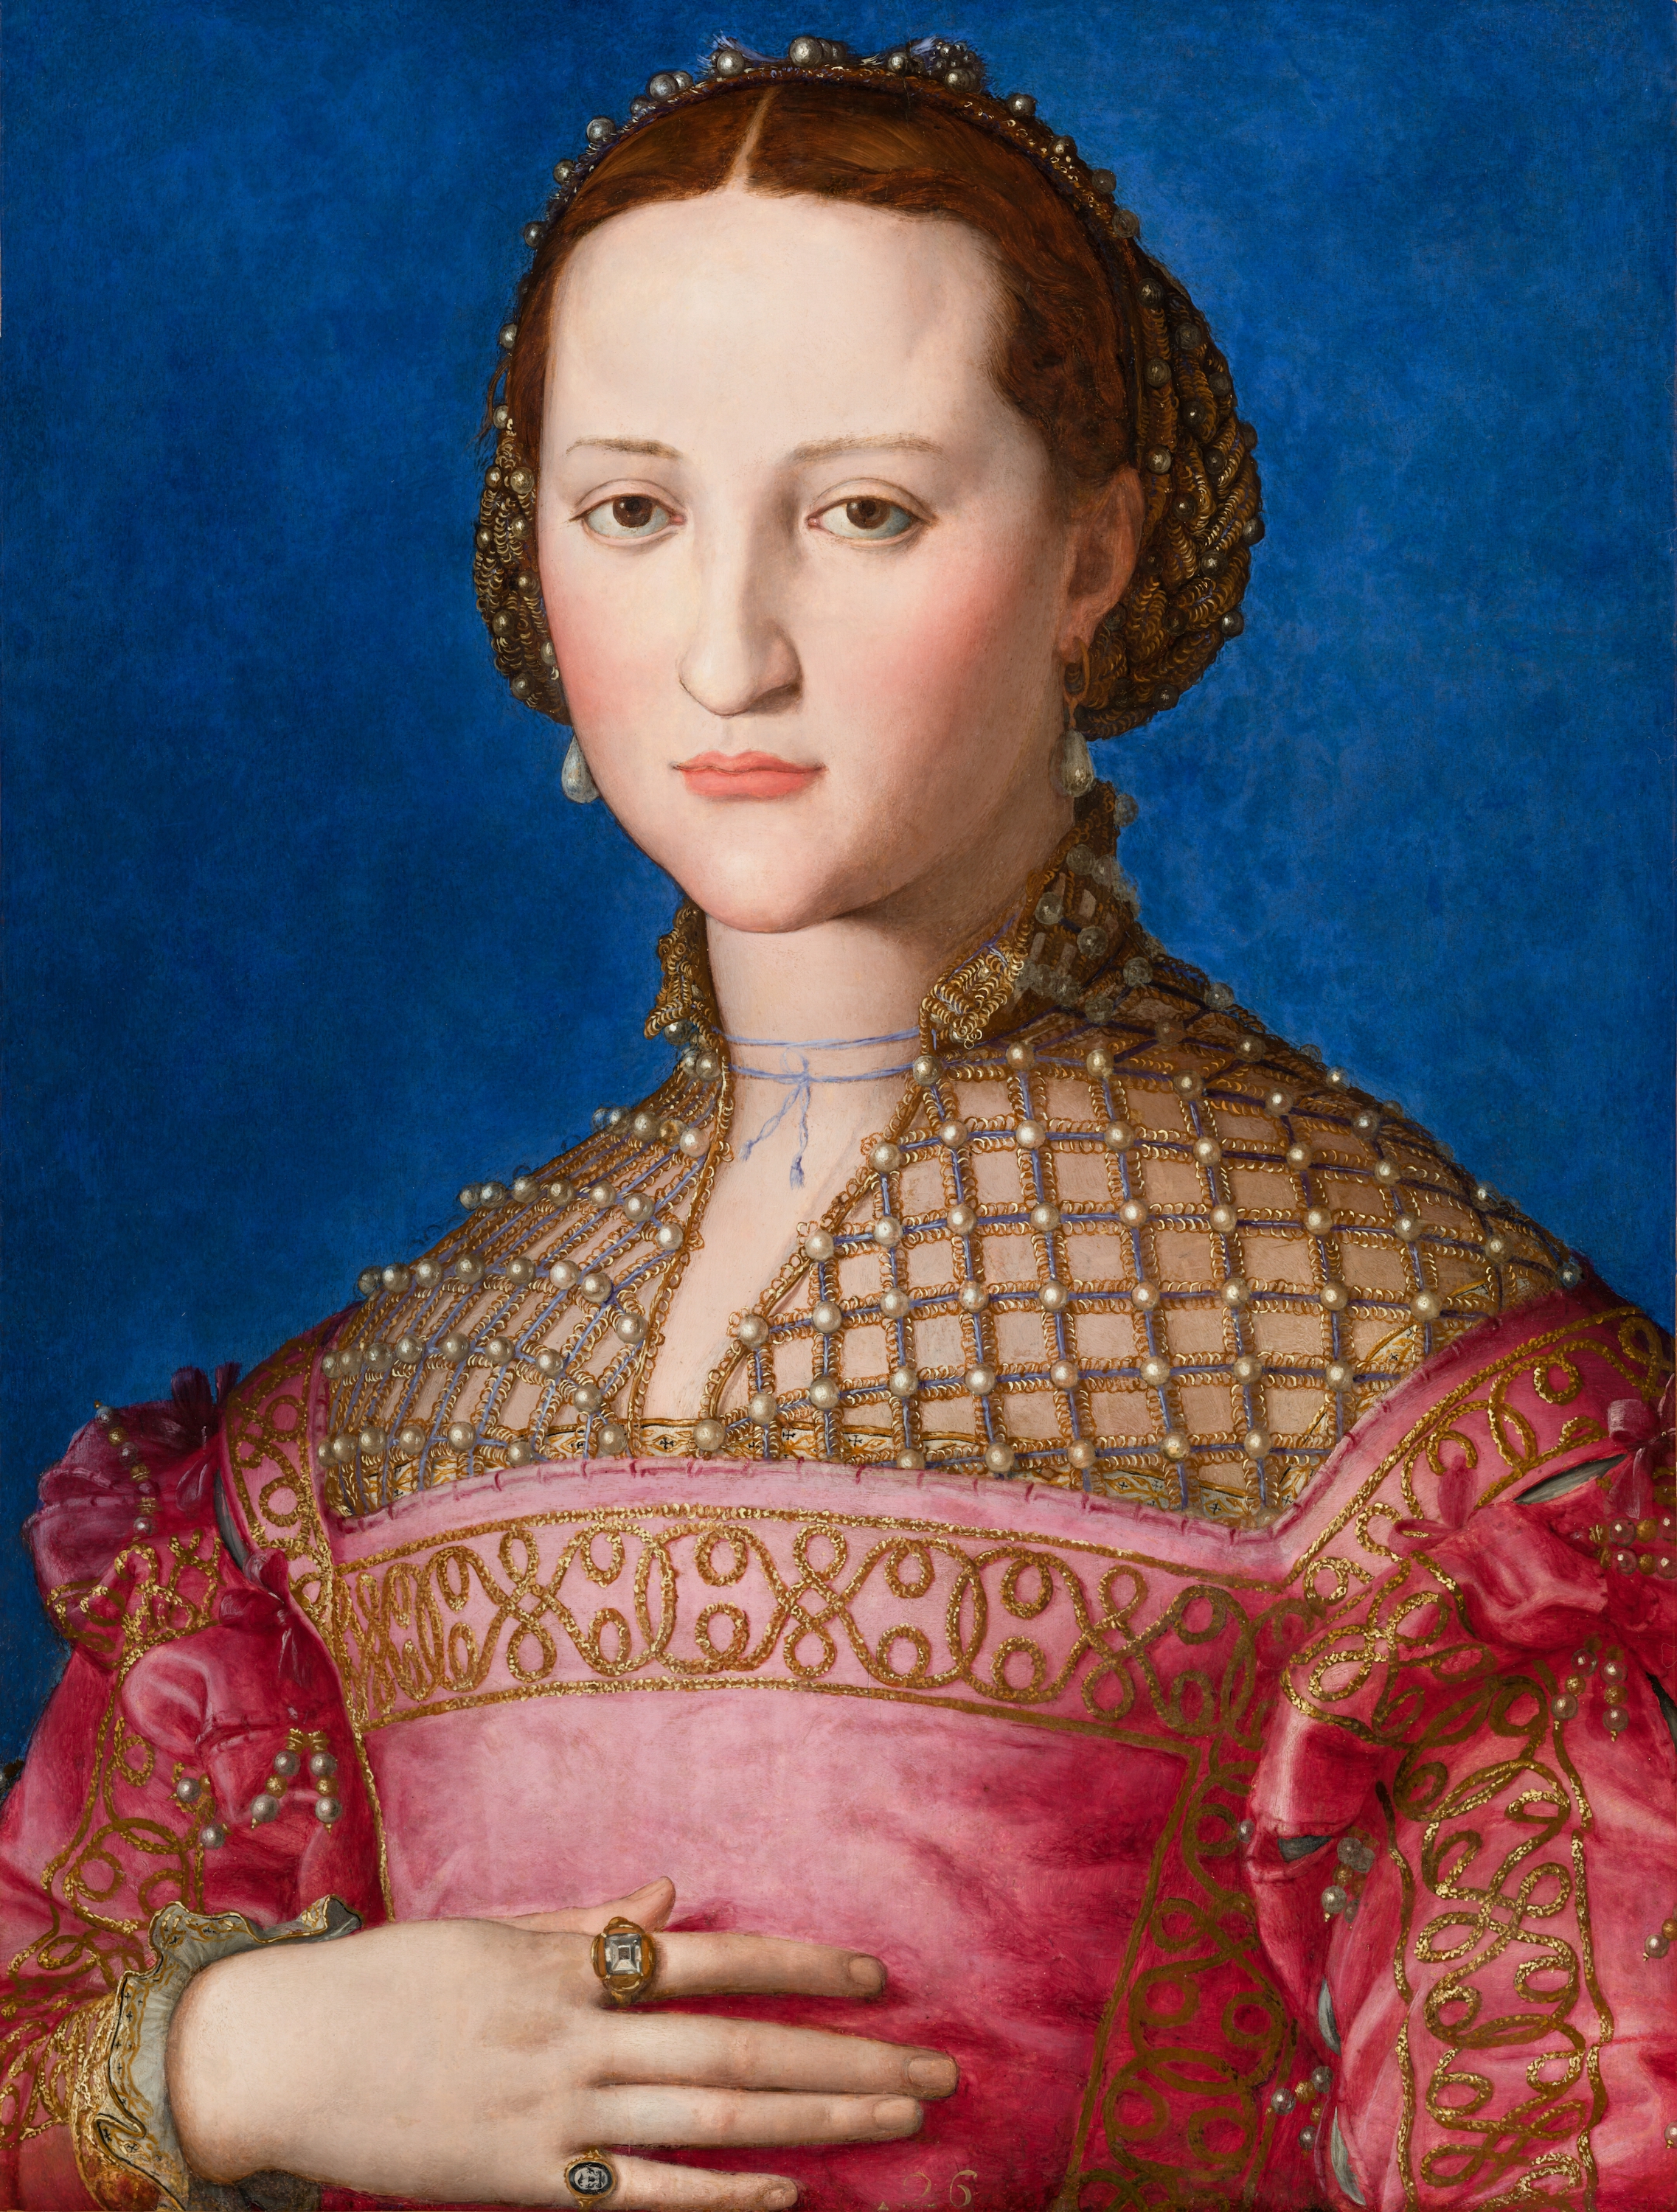 Πορτραίτο της Ελεανόρ του Τολέδο by Άνιολο Μπροντσίνο - περ. 1543 - 59 x 46 εκ. 